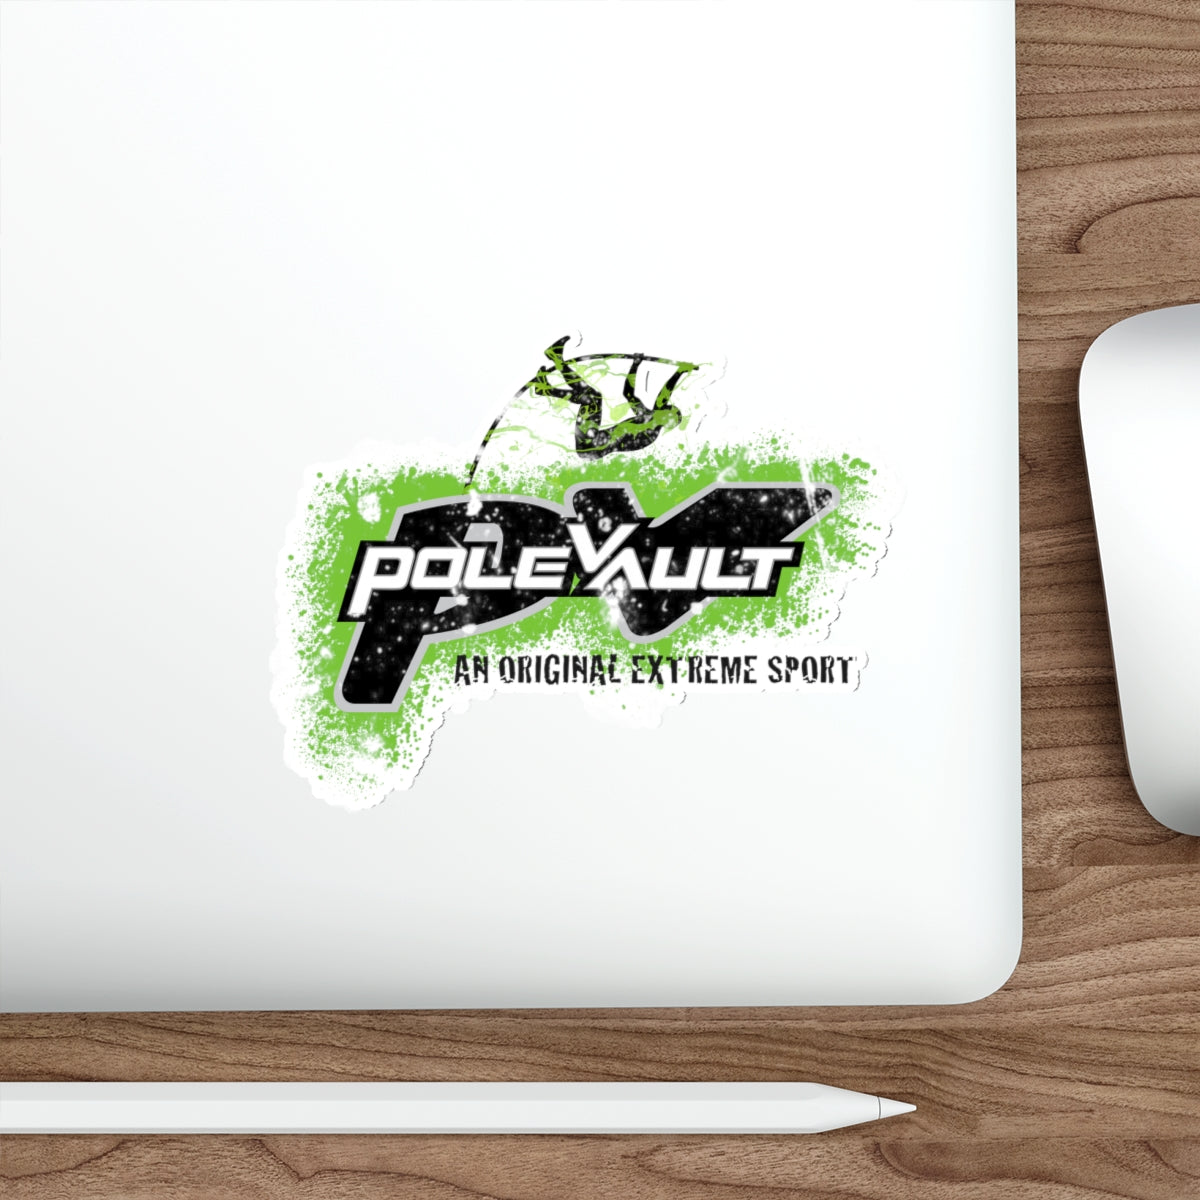 Pole Vault, An Original Extreme Sport - Die-Cut Sticker